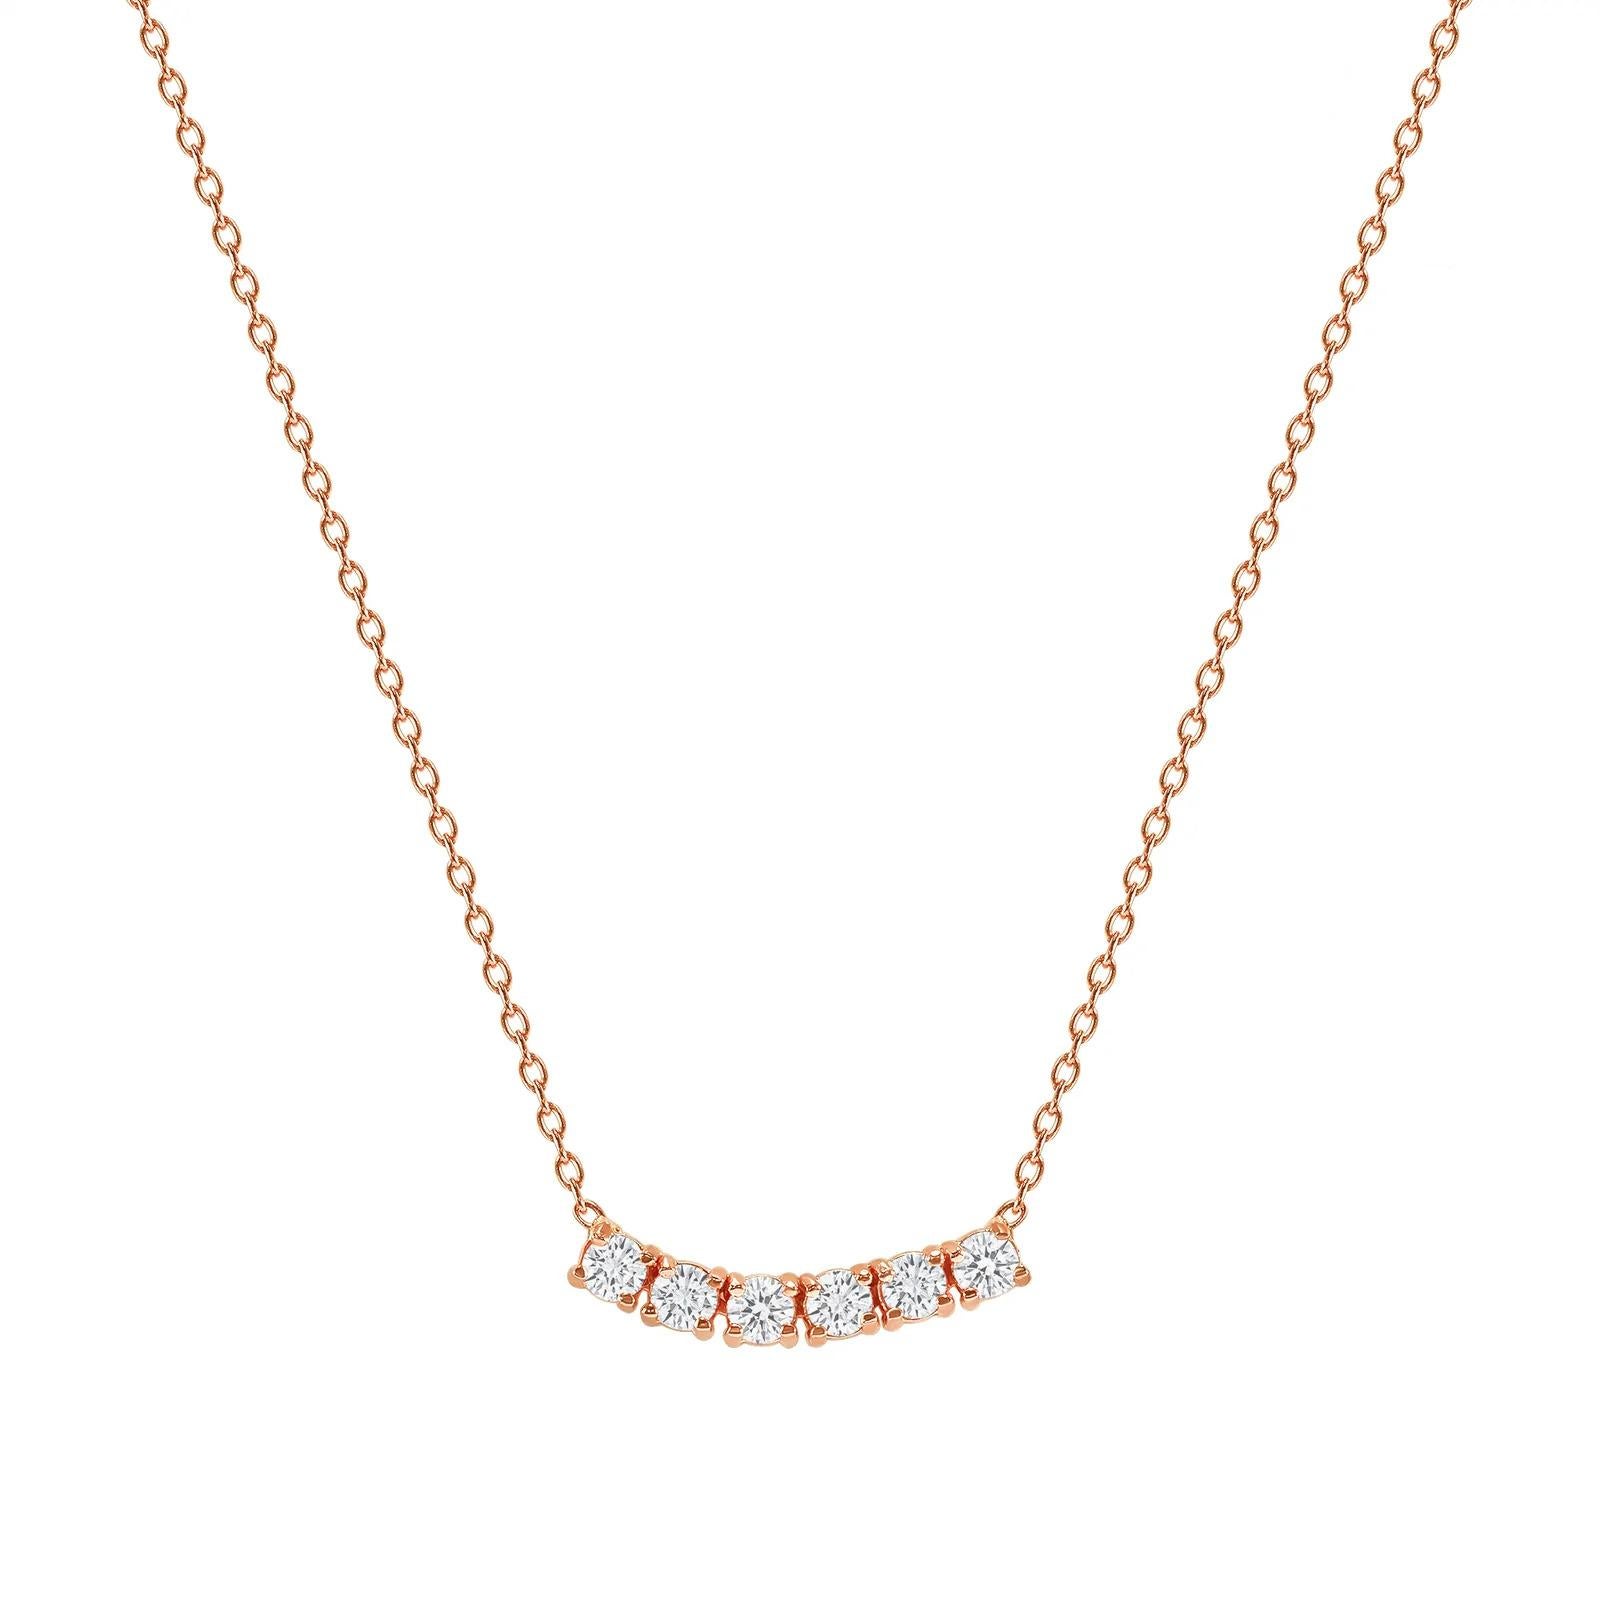 Diese zierliche, geschwungene Diamant-Halskette ist aus wunderschönem 14-karätigem Gold gefertigt und mit sechs runden Diamanten besetzt.  

Gold: 14k 
Diamant Gesamtkarat: 1 Karat
Diamant-Schliff: Rund (6 Diamanten)
Diamant Reinheit: